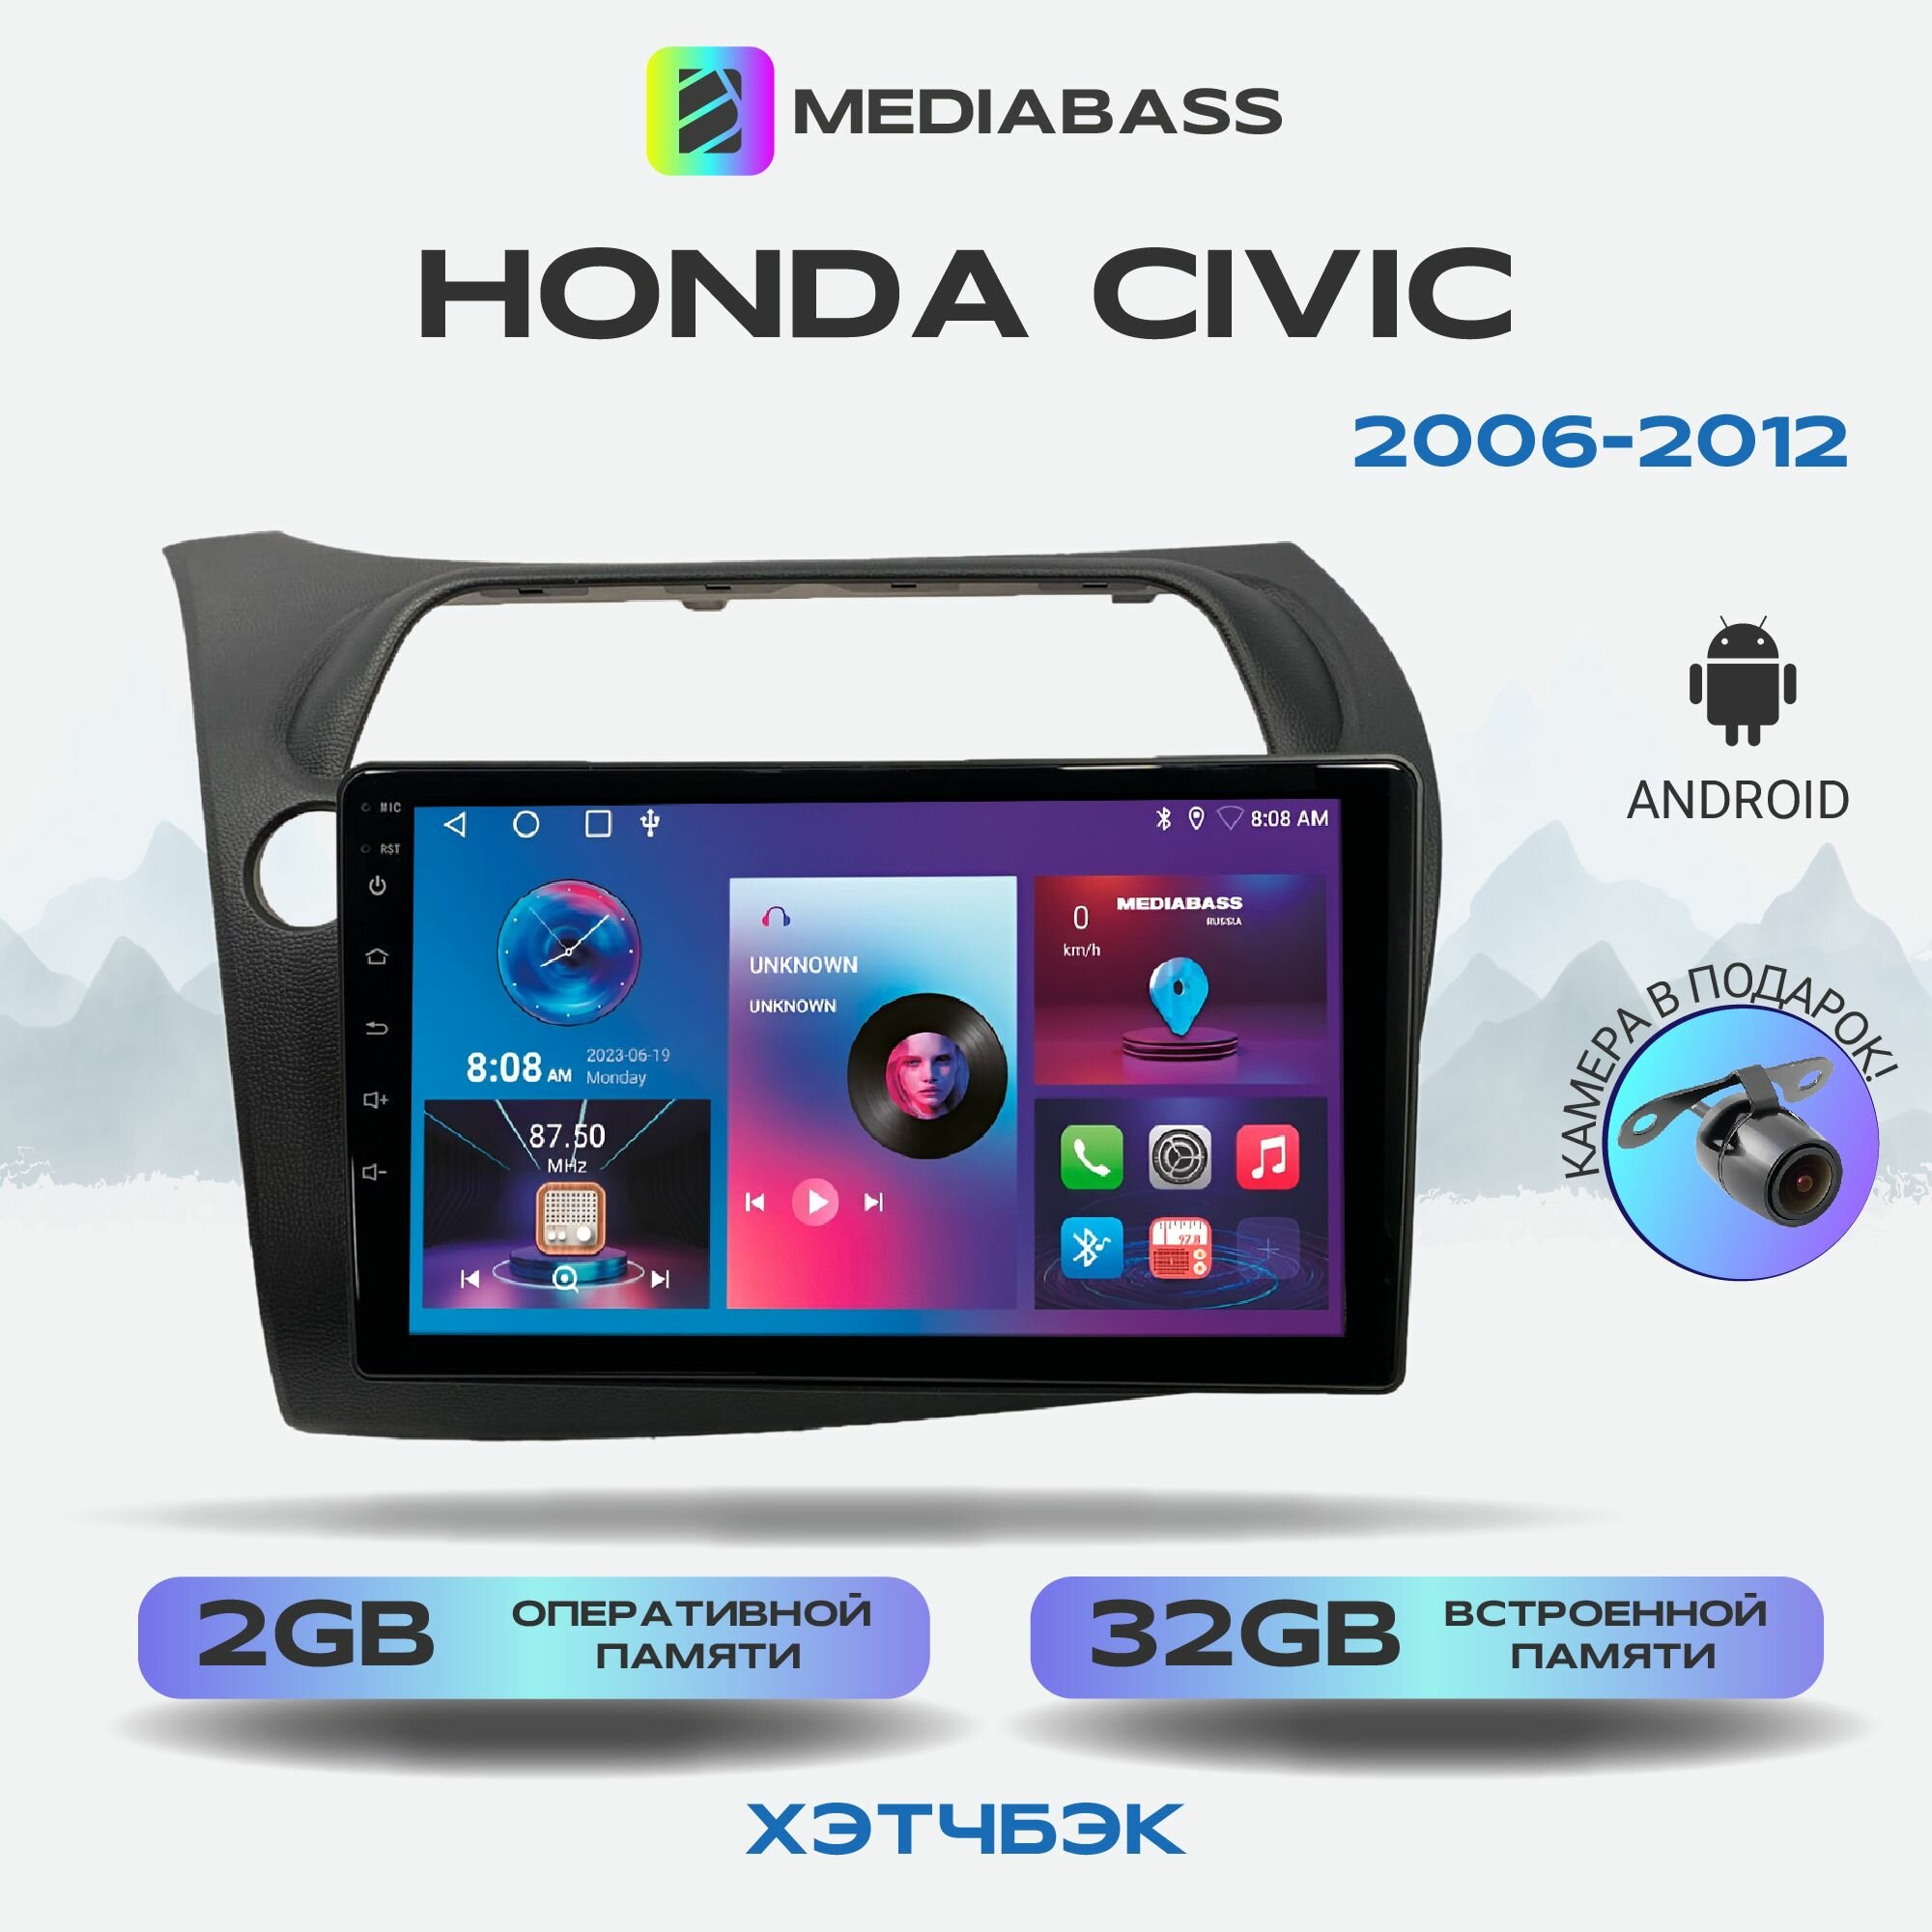 Автомагнитола Mediabass Honda Civic Хонда Цивик хэтчбэк 2006-2012, Android 12, 2/32ГБ, 4-ядерный процессор, QLED экран с разрешением 1280*720, чип-усилитель YD7388, планшет / Хонда Цивик хэтчбэк